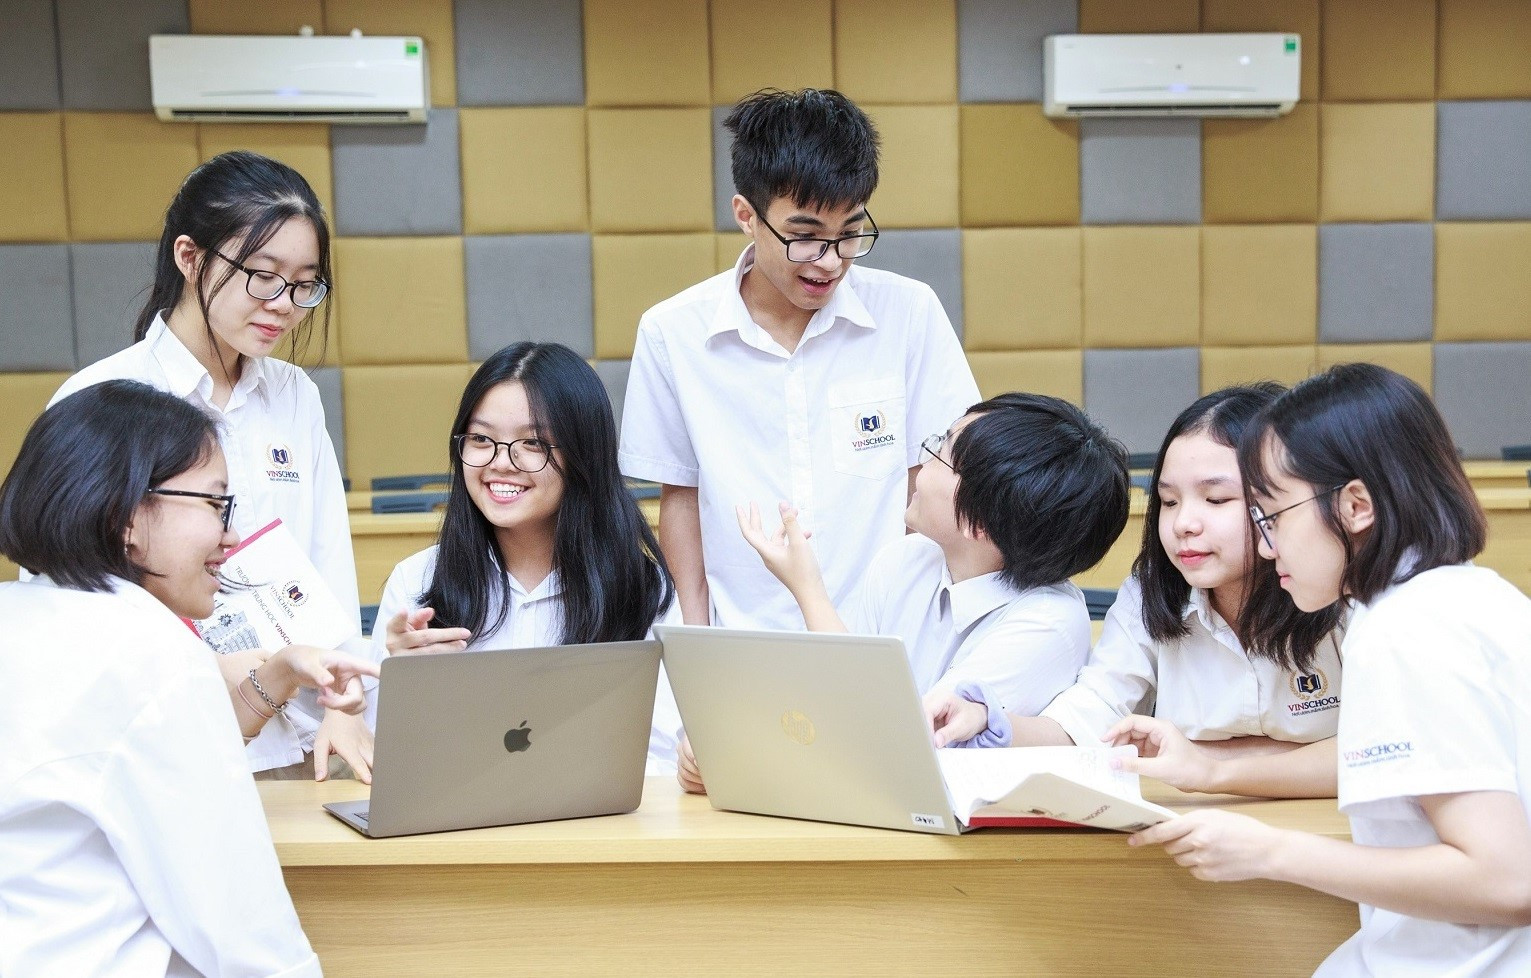 Chương trình Cambridge tại Vinschool: “Chìa khóa mới’’ vào các đại học hàng đầu Việt Nam